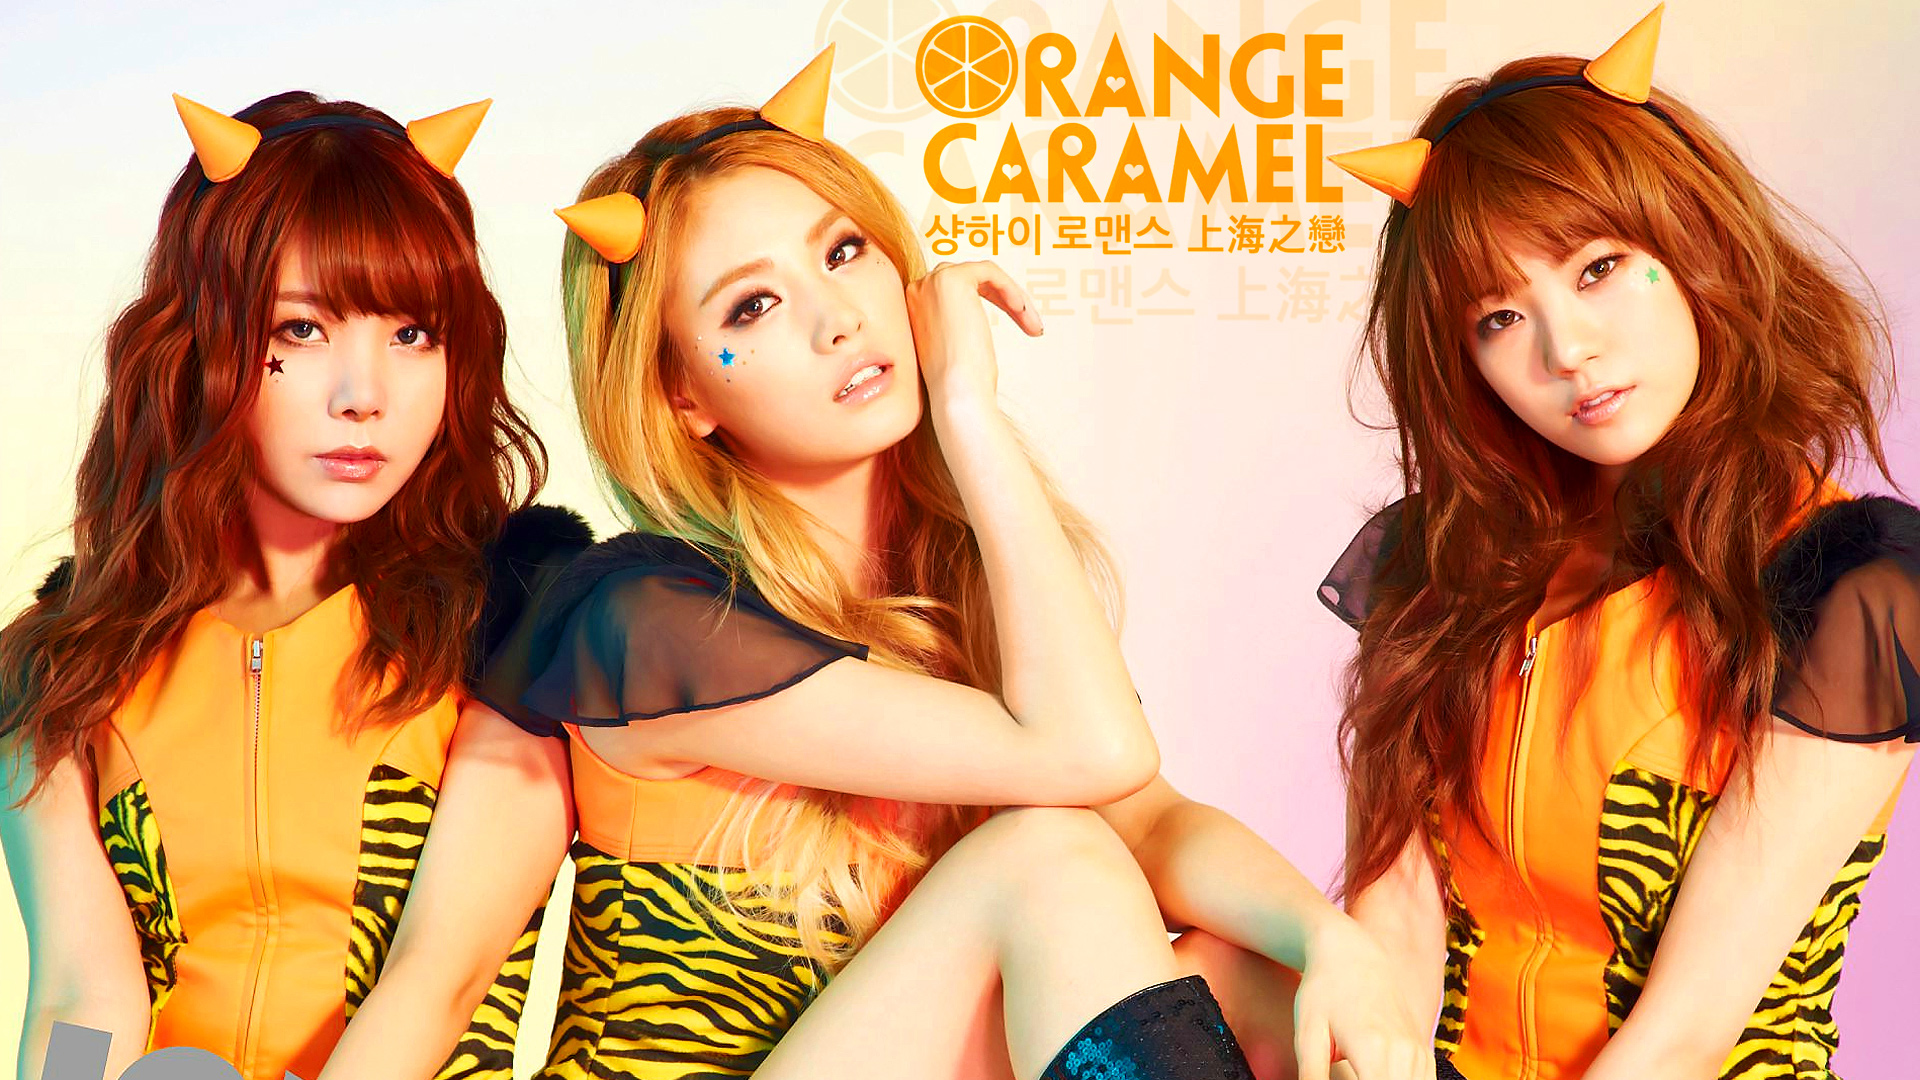 Orange Caramel Backgrounds on Wallpapers Vista